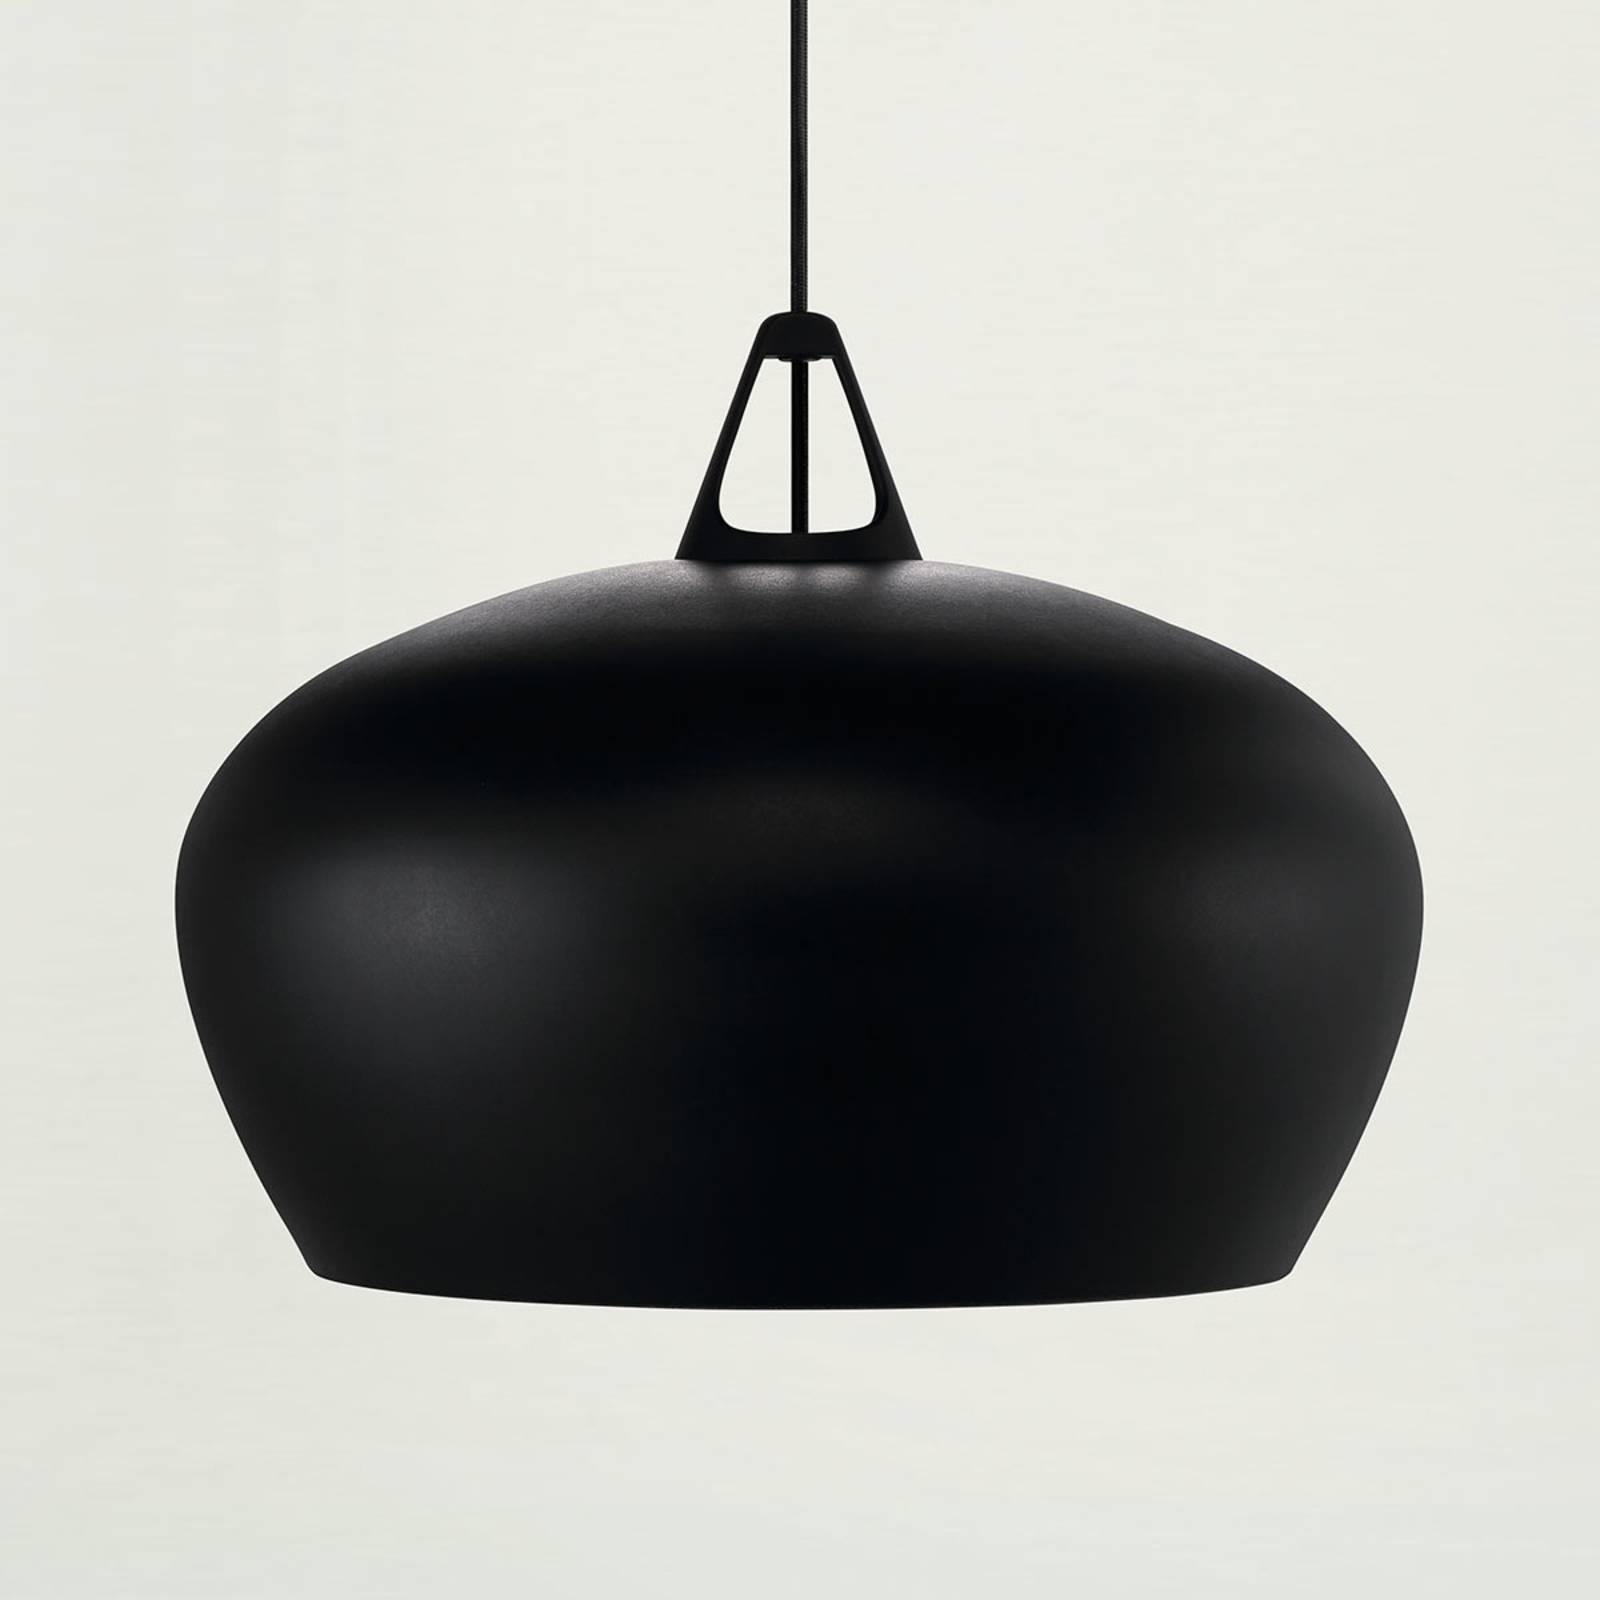 Effectrijke hanglamp Belly, Ø 46 cm